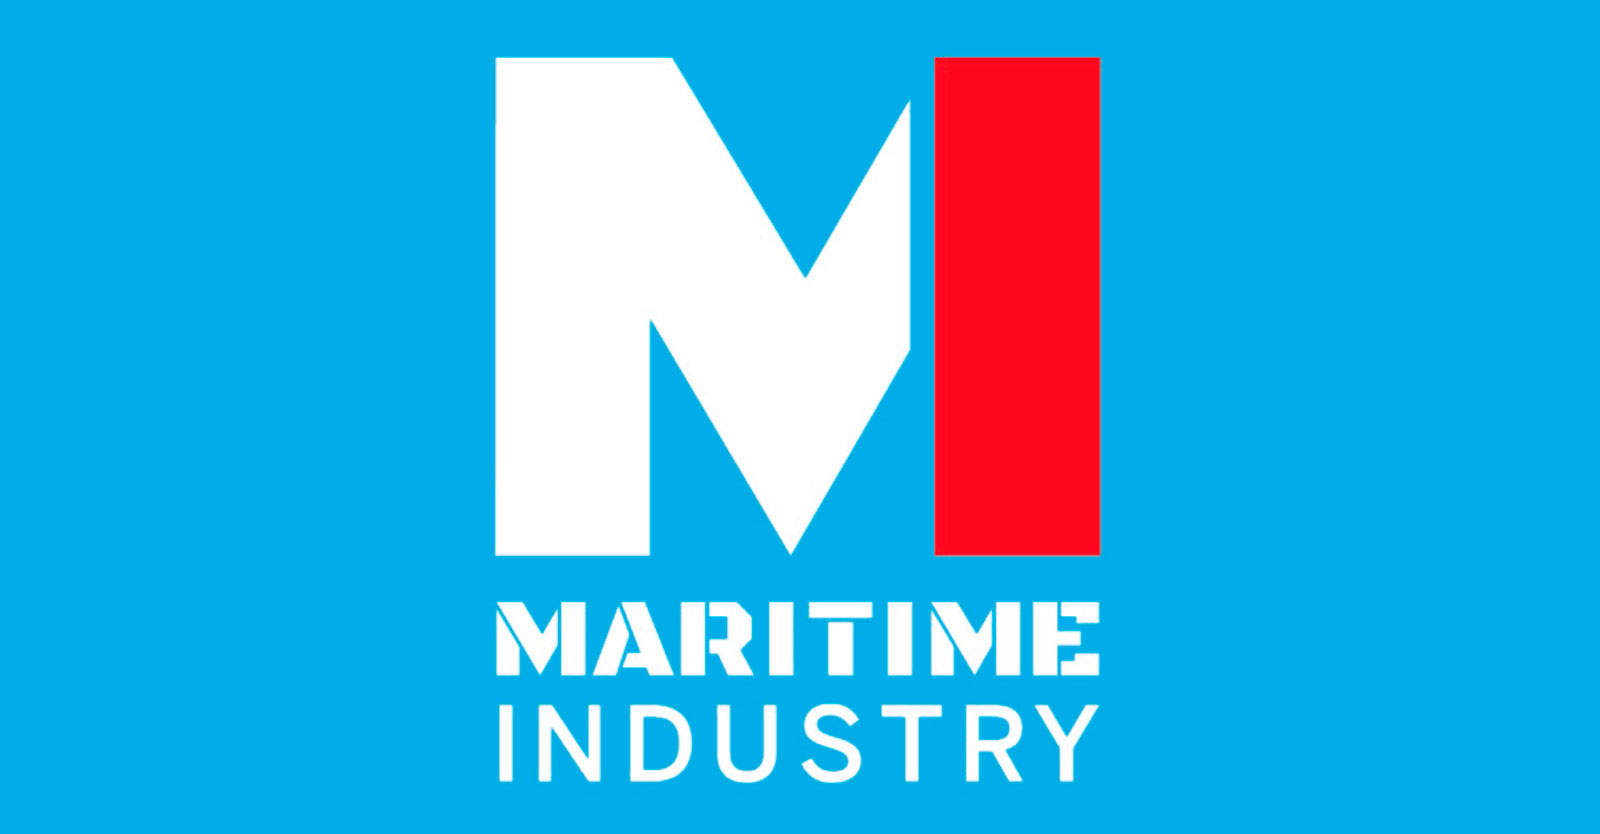 Bezoek KBN tijdens Maritime Industry 2022